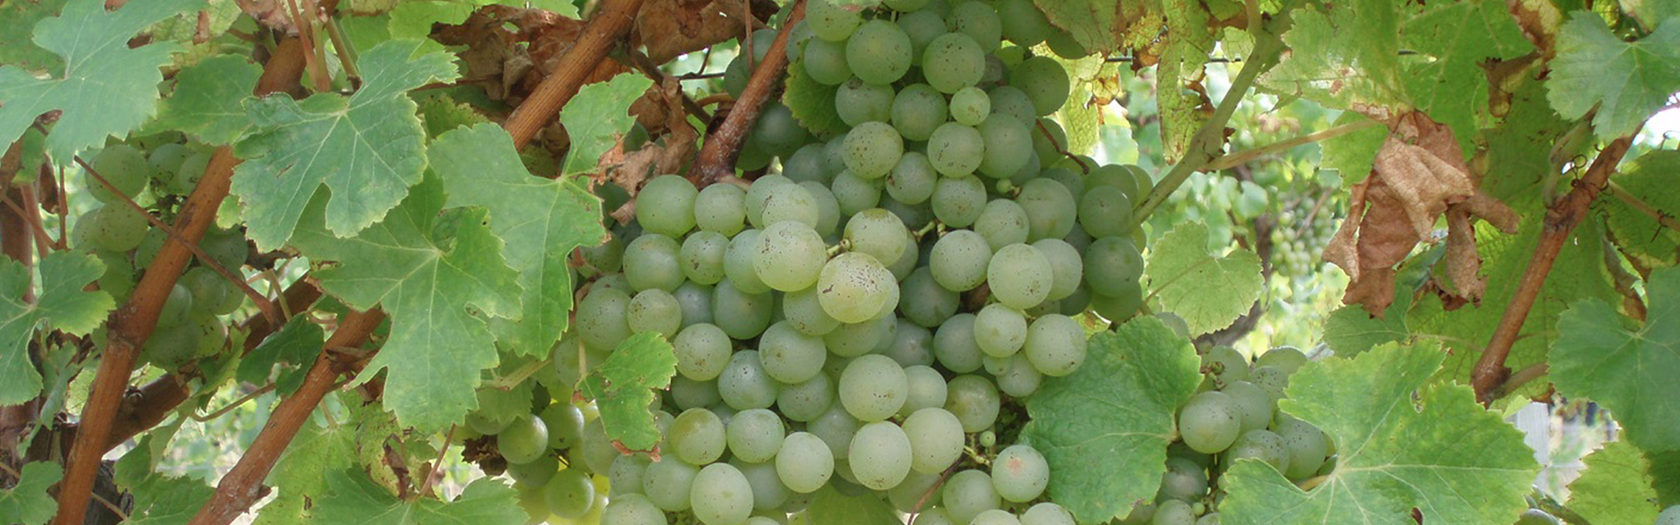 Сорт винограда для белого вина 7 букв